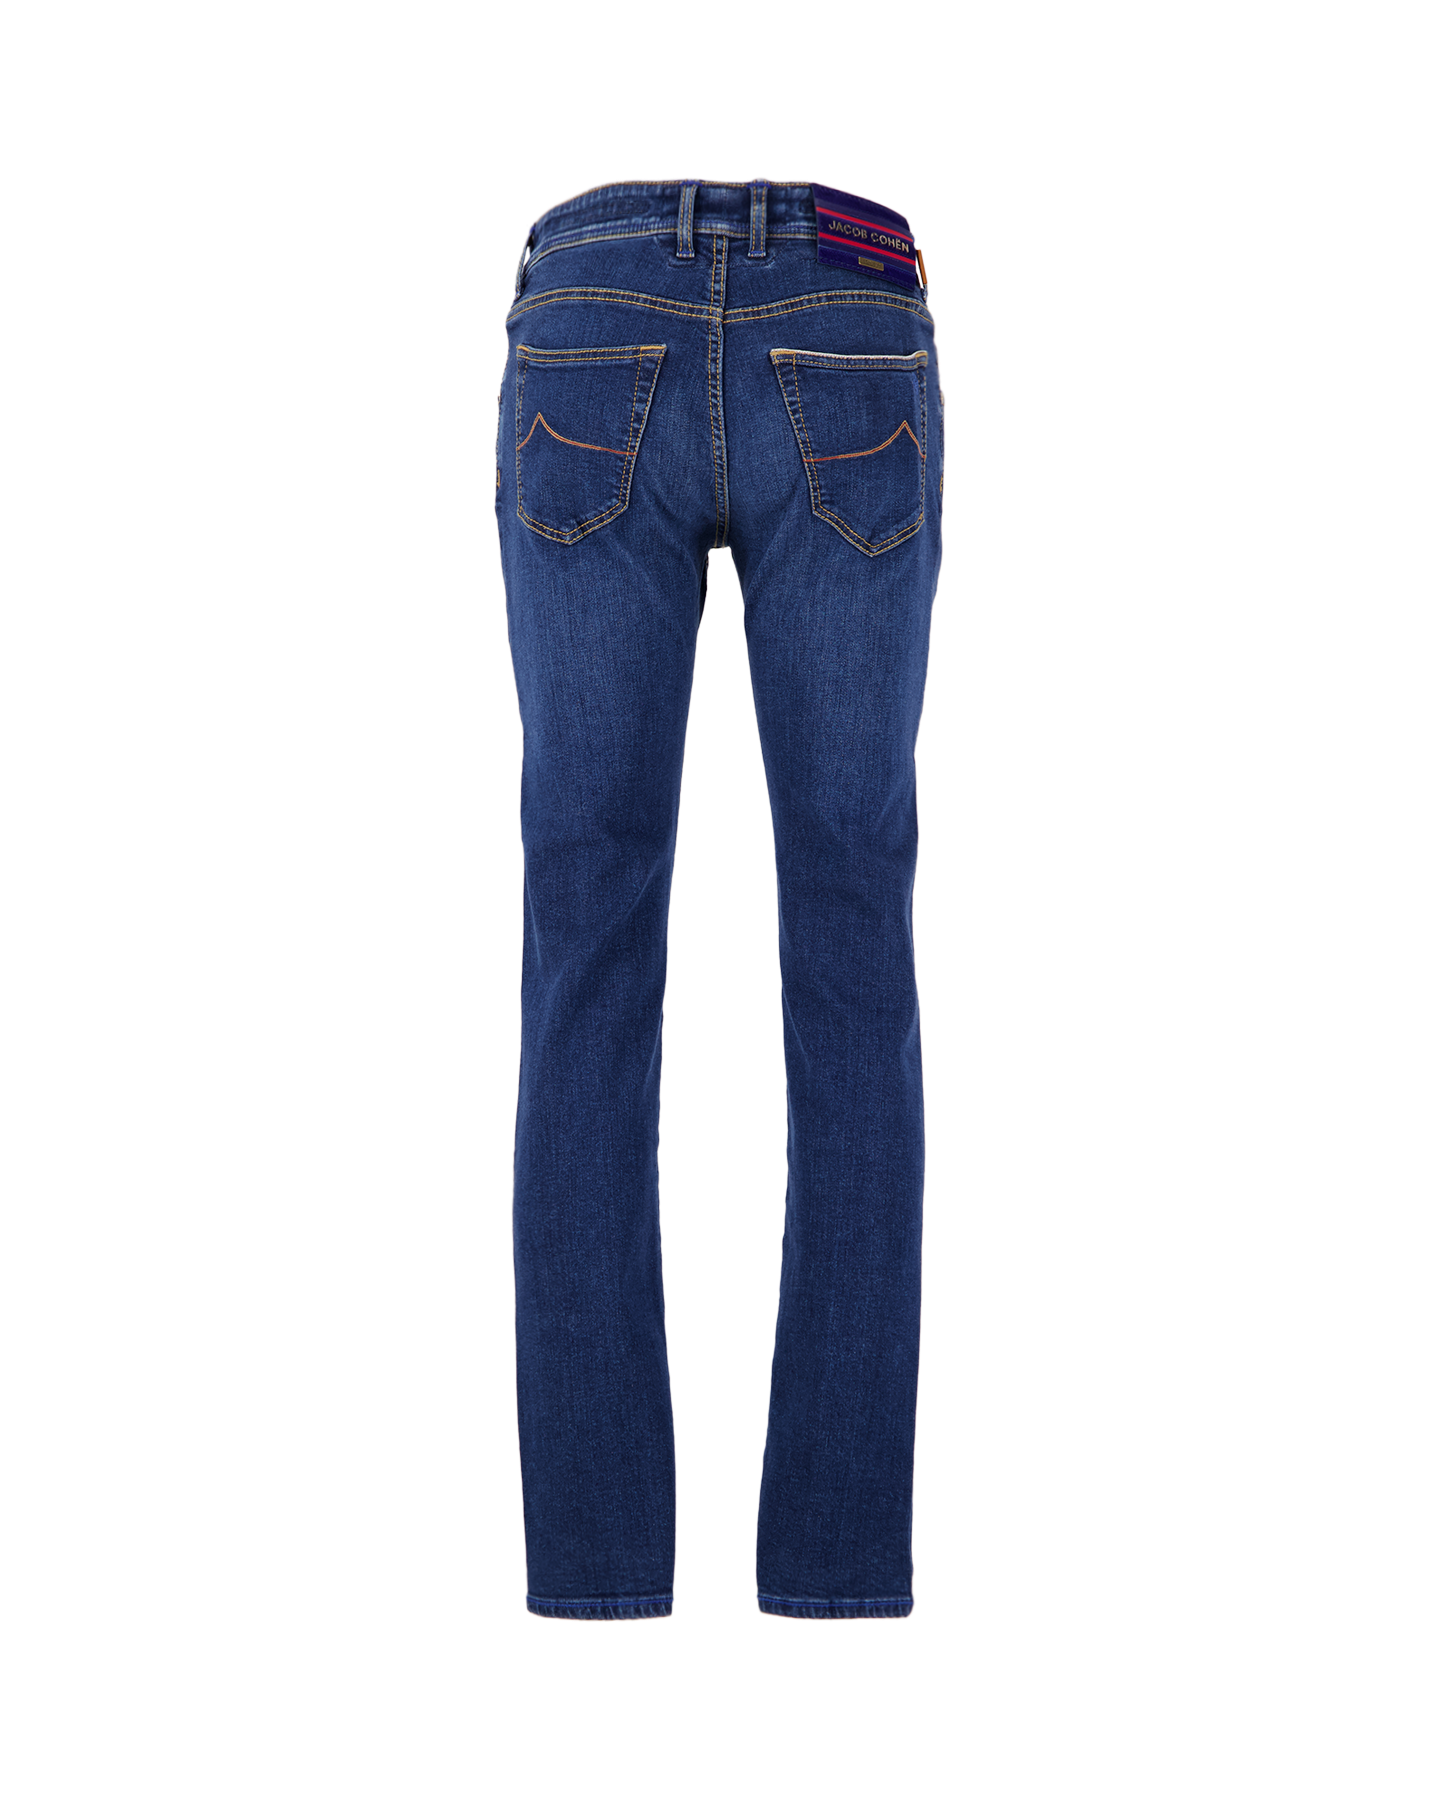 Jacob Cohen Nick Mid-Blue Selvedge Limited-Edition Jeans 778D DENIM 2